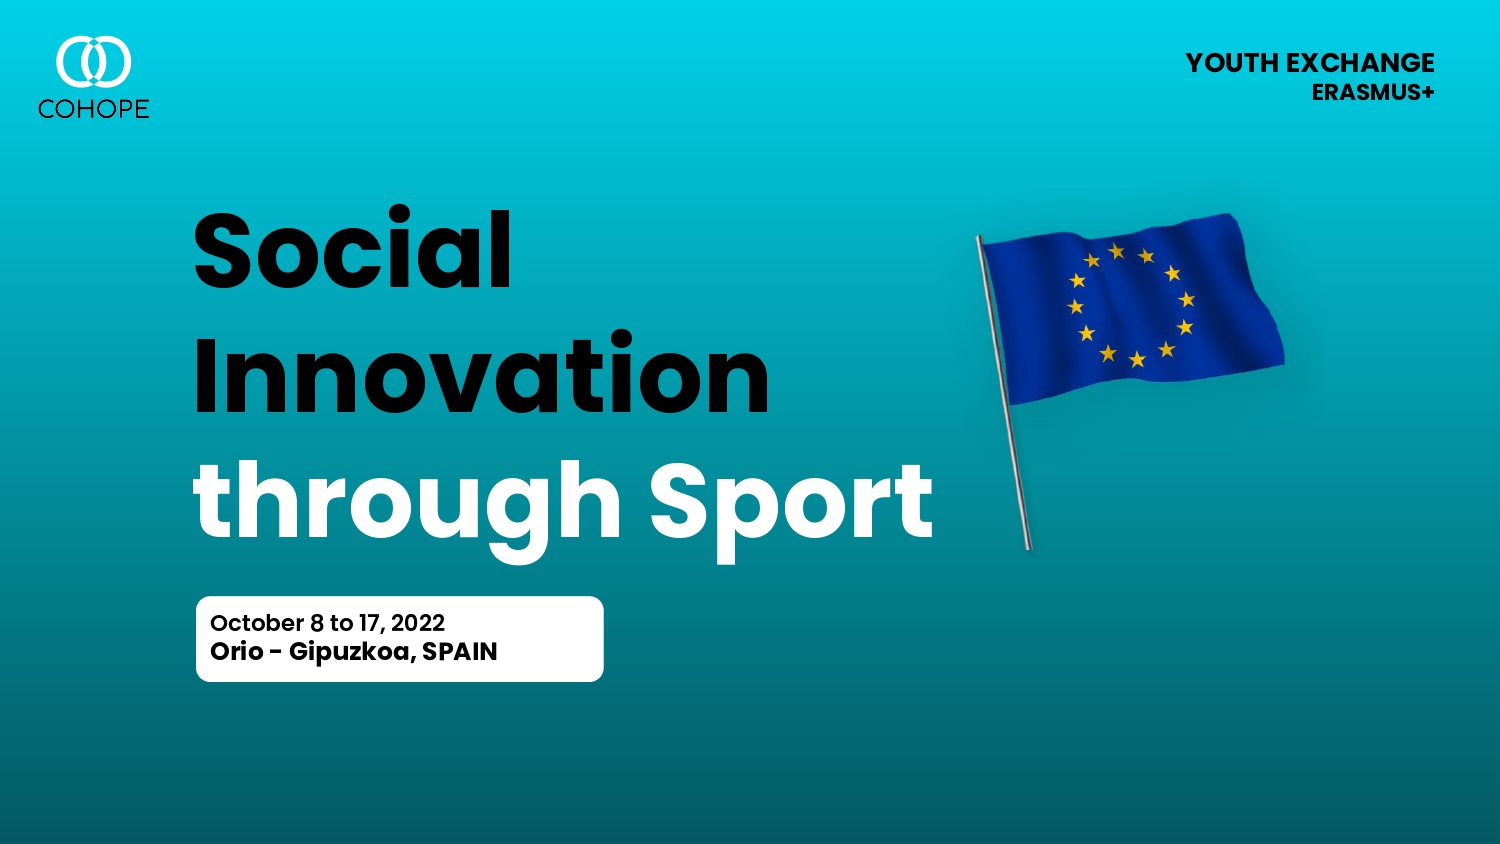 Scambio giovanile "Social Innovation through Sport" , dal 8 al 17 ottobre 2022 a Orio - Gipuzkoa, Spagna